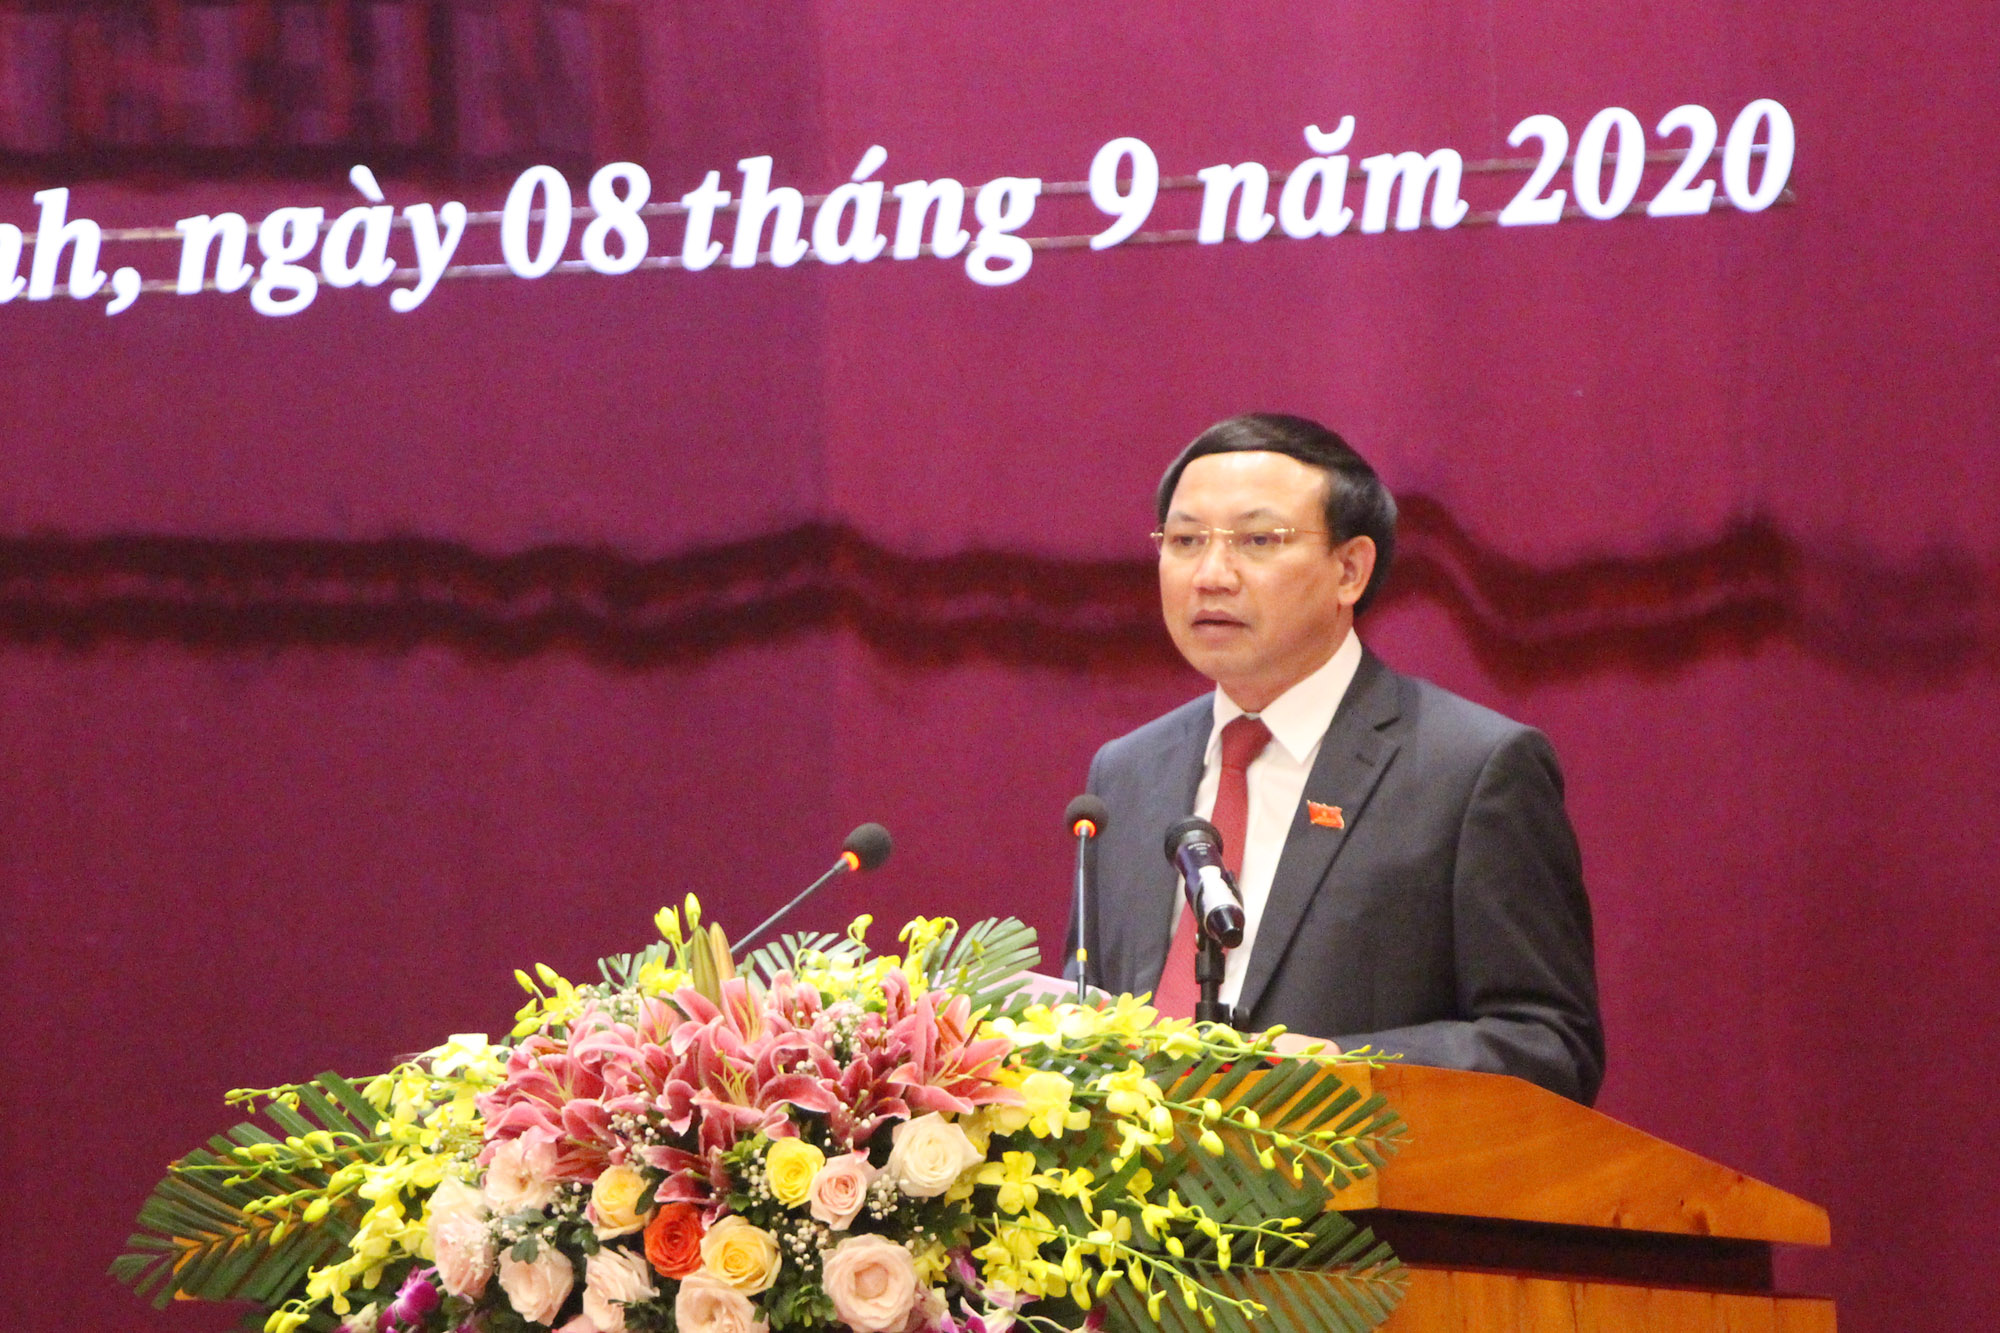 Đồng chí Nguyễn Xuân Ký, Bí thư Tỉnh ủy, Chủ tịch HĐND tỉnh, phát biểu bế mạc kỳ họp.